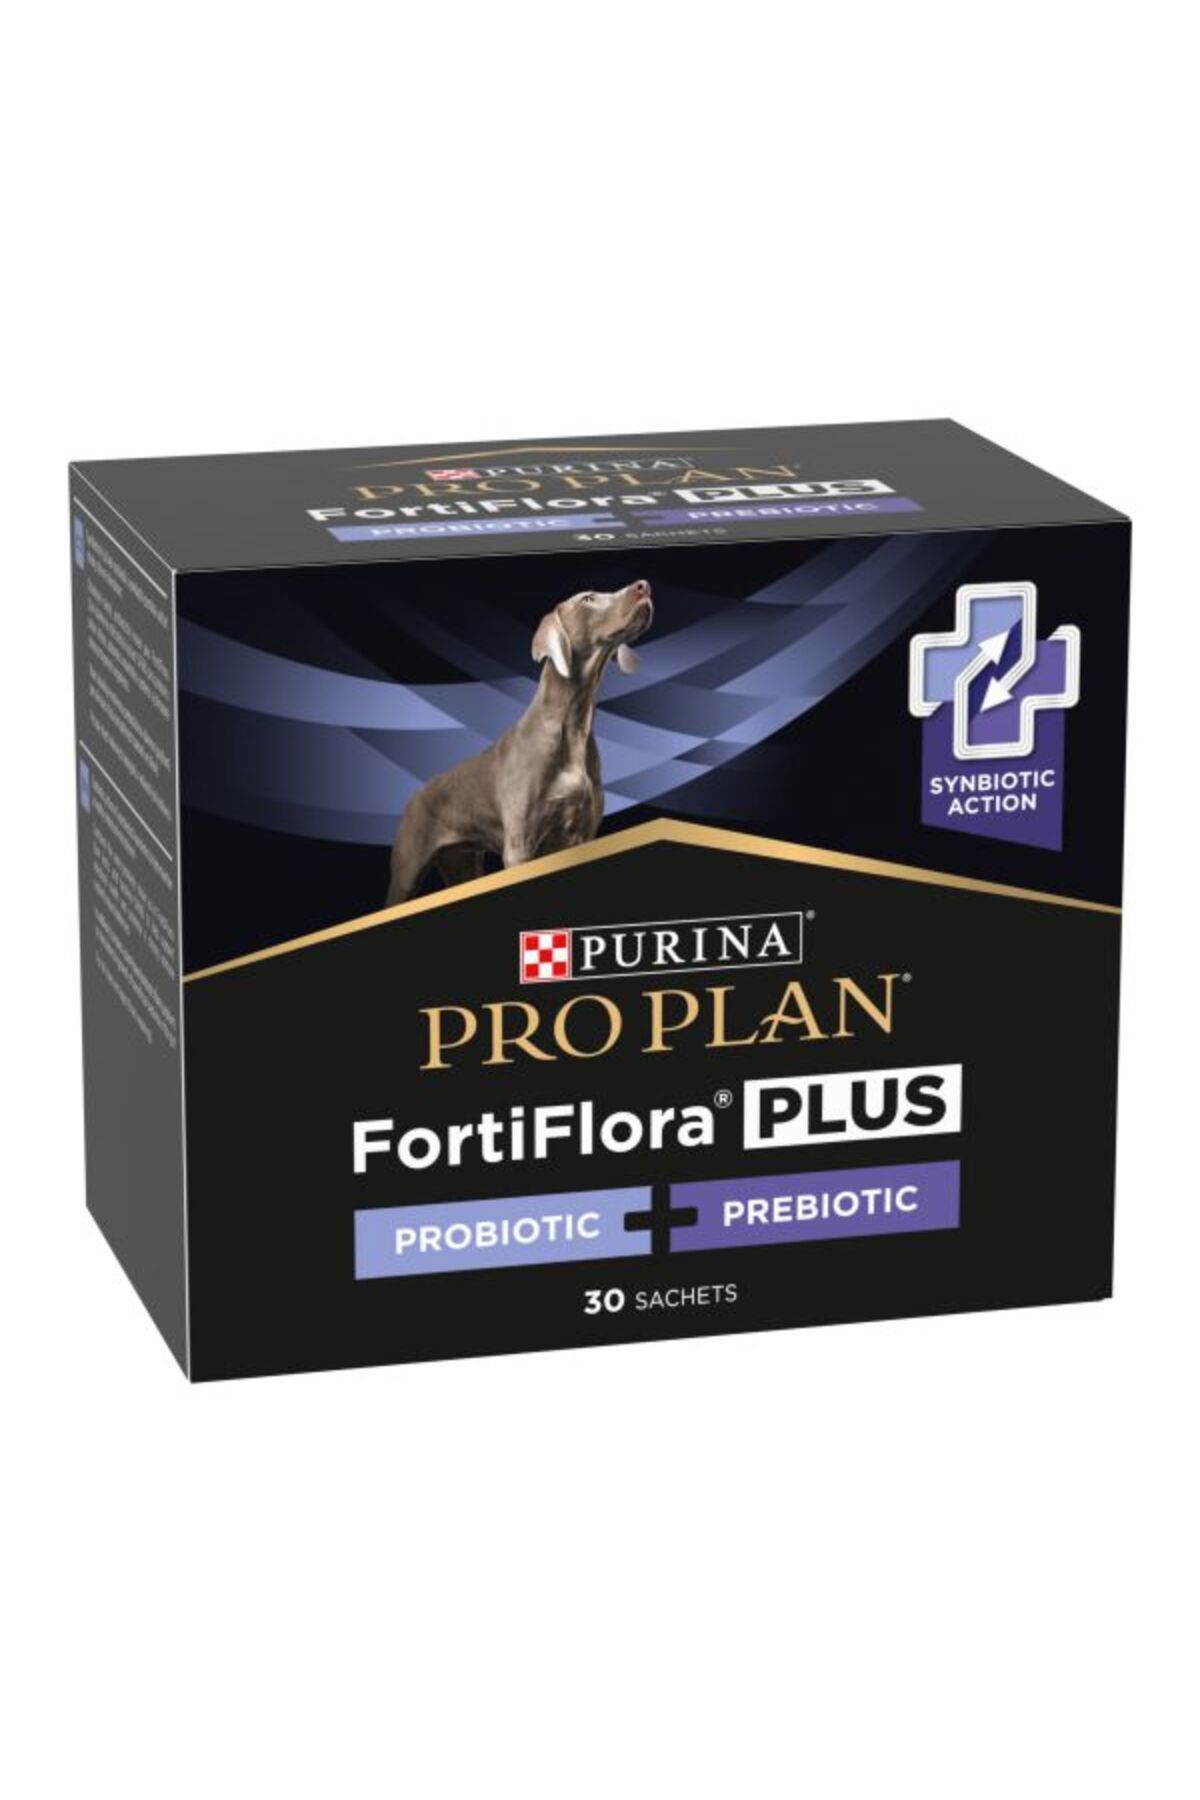 Purina Proplan Fortiflora Köpekler Için Probiyotik-prebiotik Takviyesi 5 Şase (5 X2 GR)